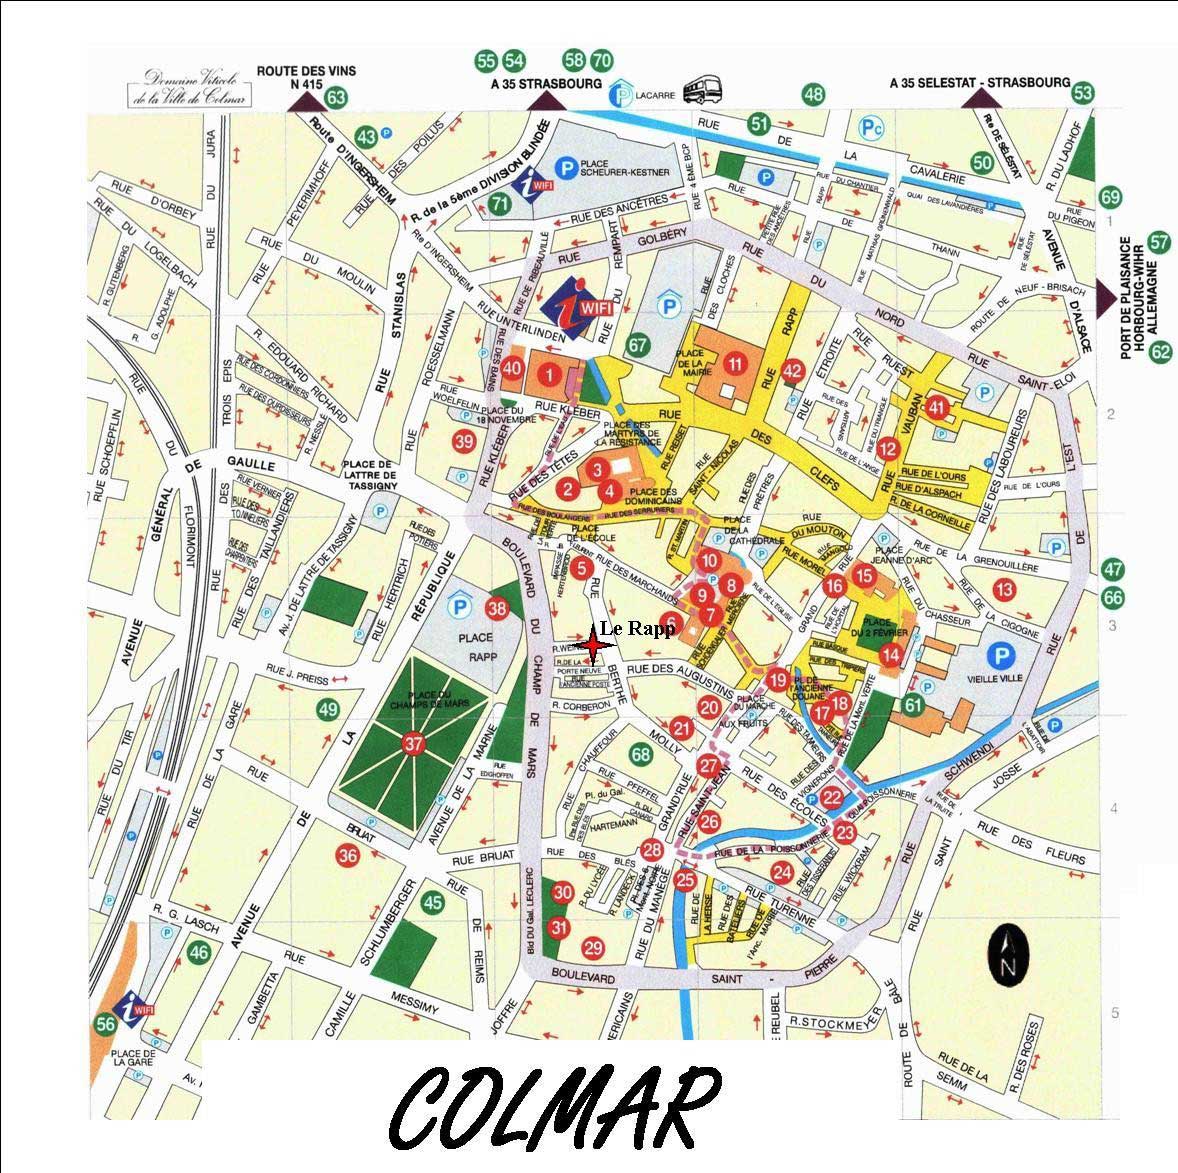 Plan de Colmar